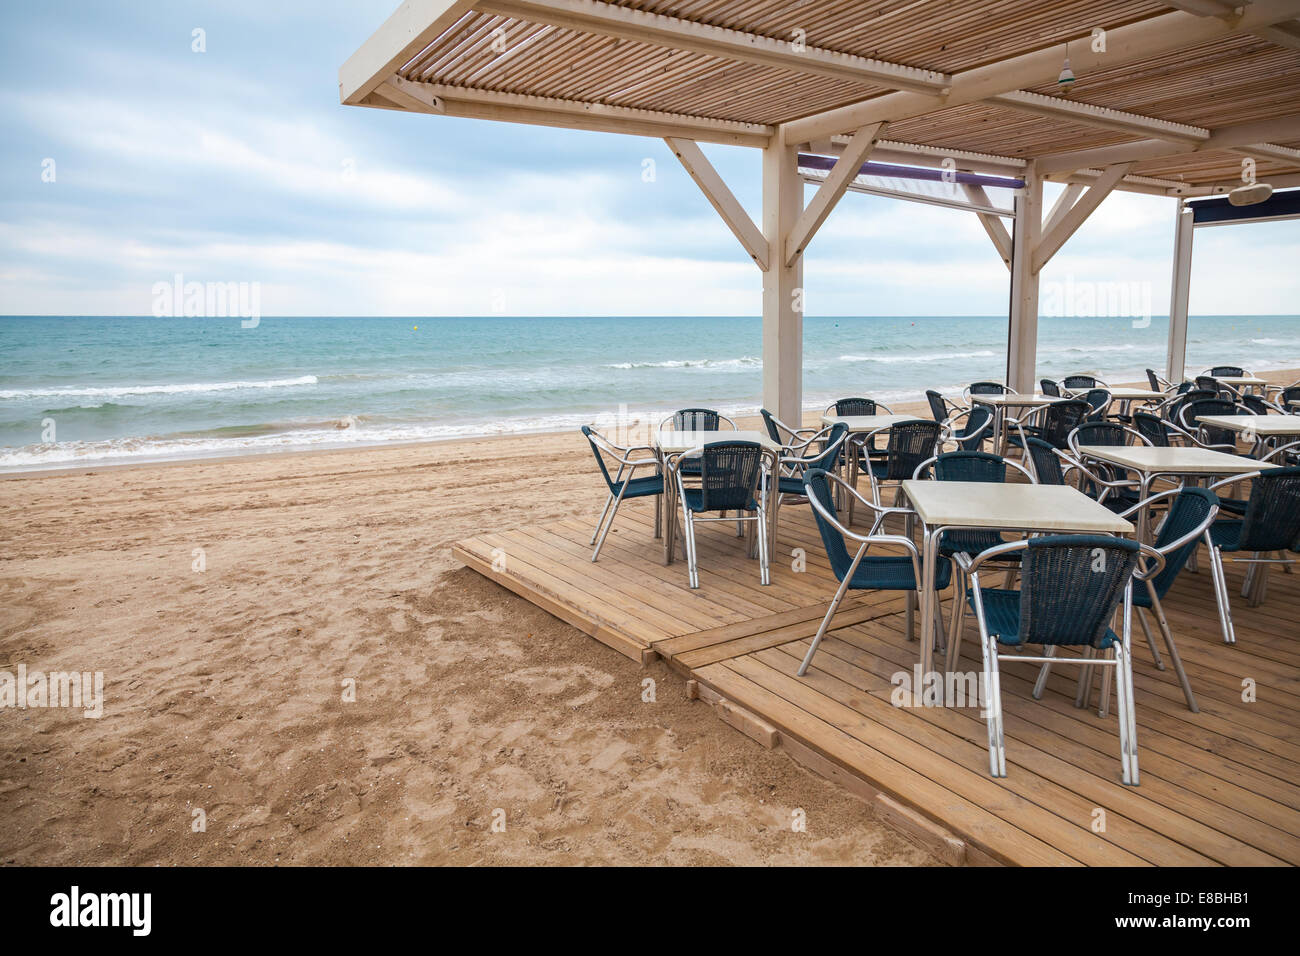 Lato mare bar interno con pavimento in legno e poltrone in metallo sulla spiaggia sabbiosa in Spagna Foto Stock